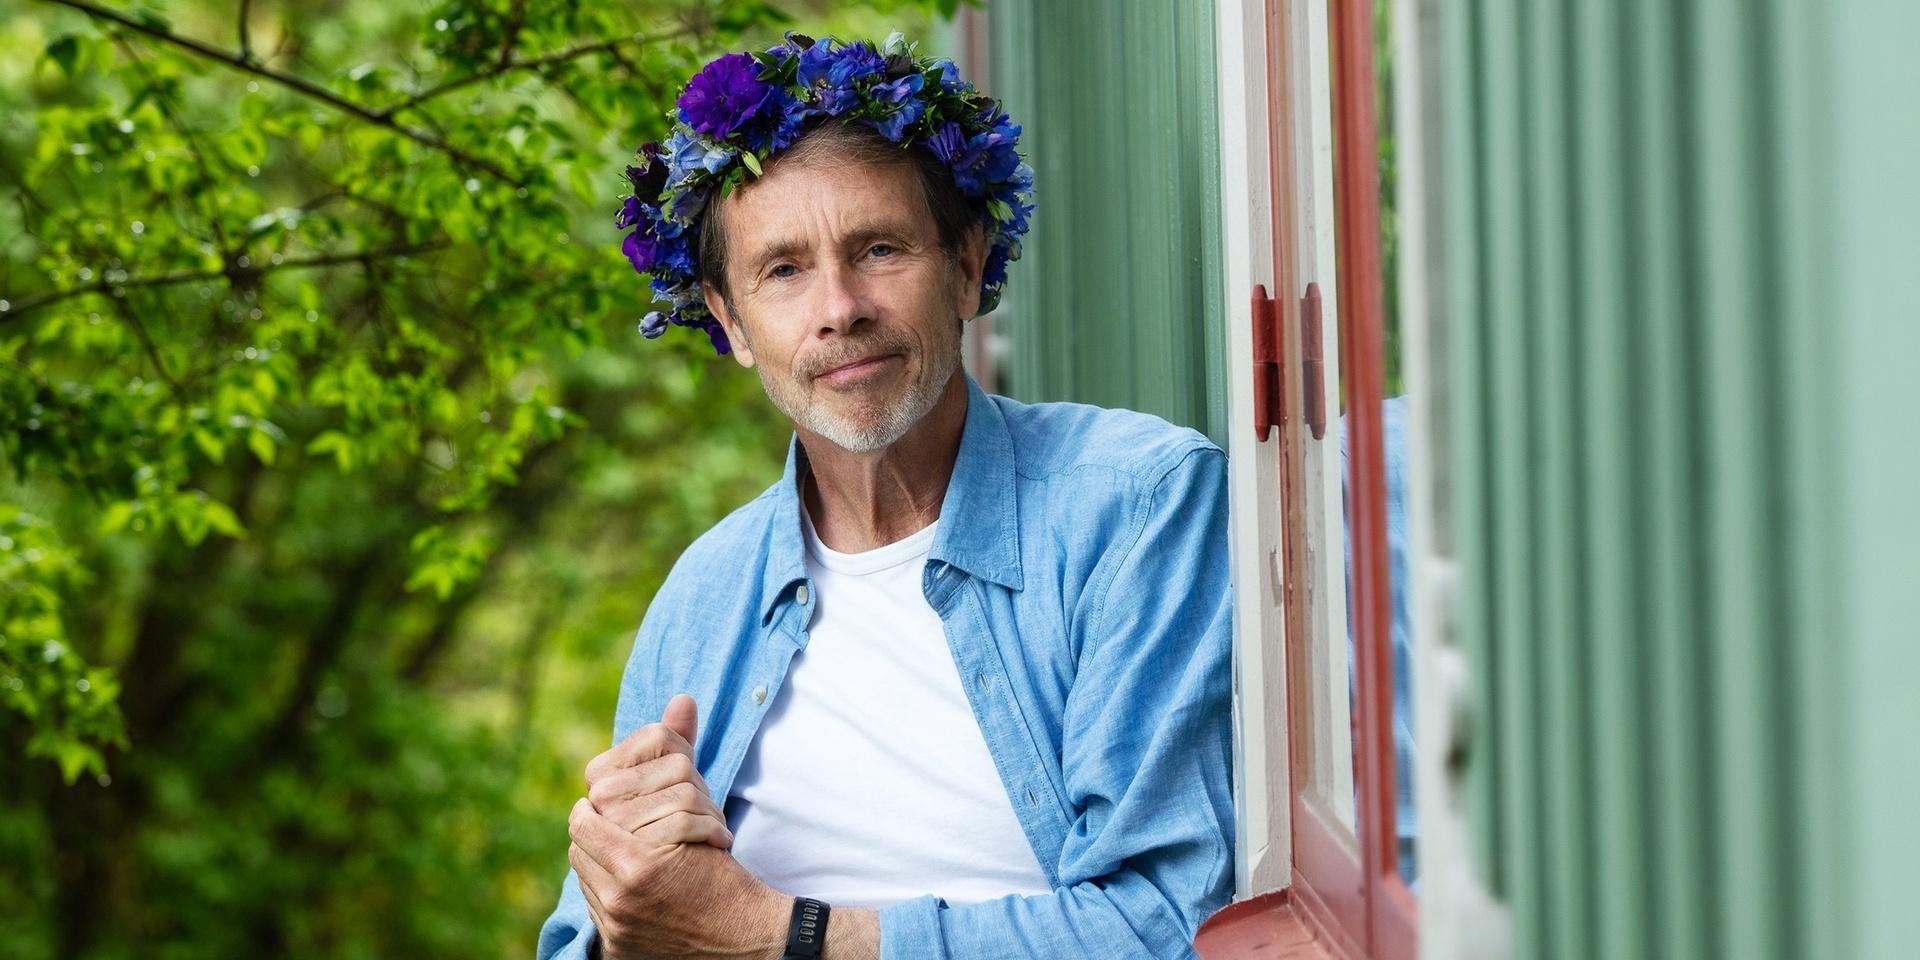 Jacob Hård (af Segerstad) poserar inför Sommar i P1, han har vit t-shirt, svarta byxor. Skärp med metallspänne, blå skjorta och en blomsterkrans med blåa blommor.